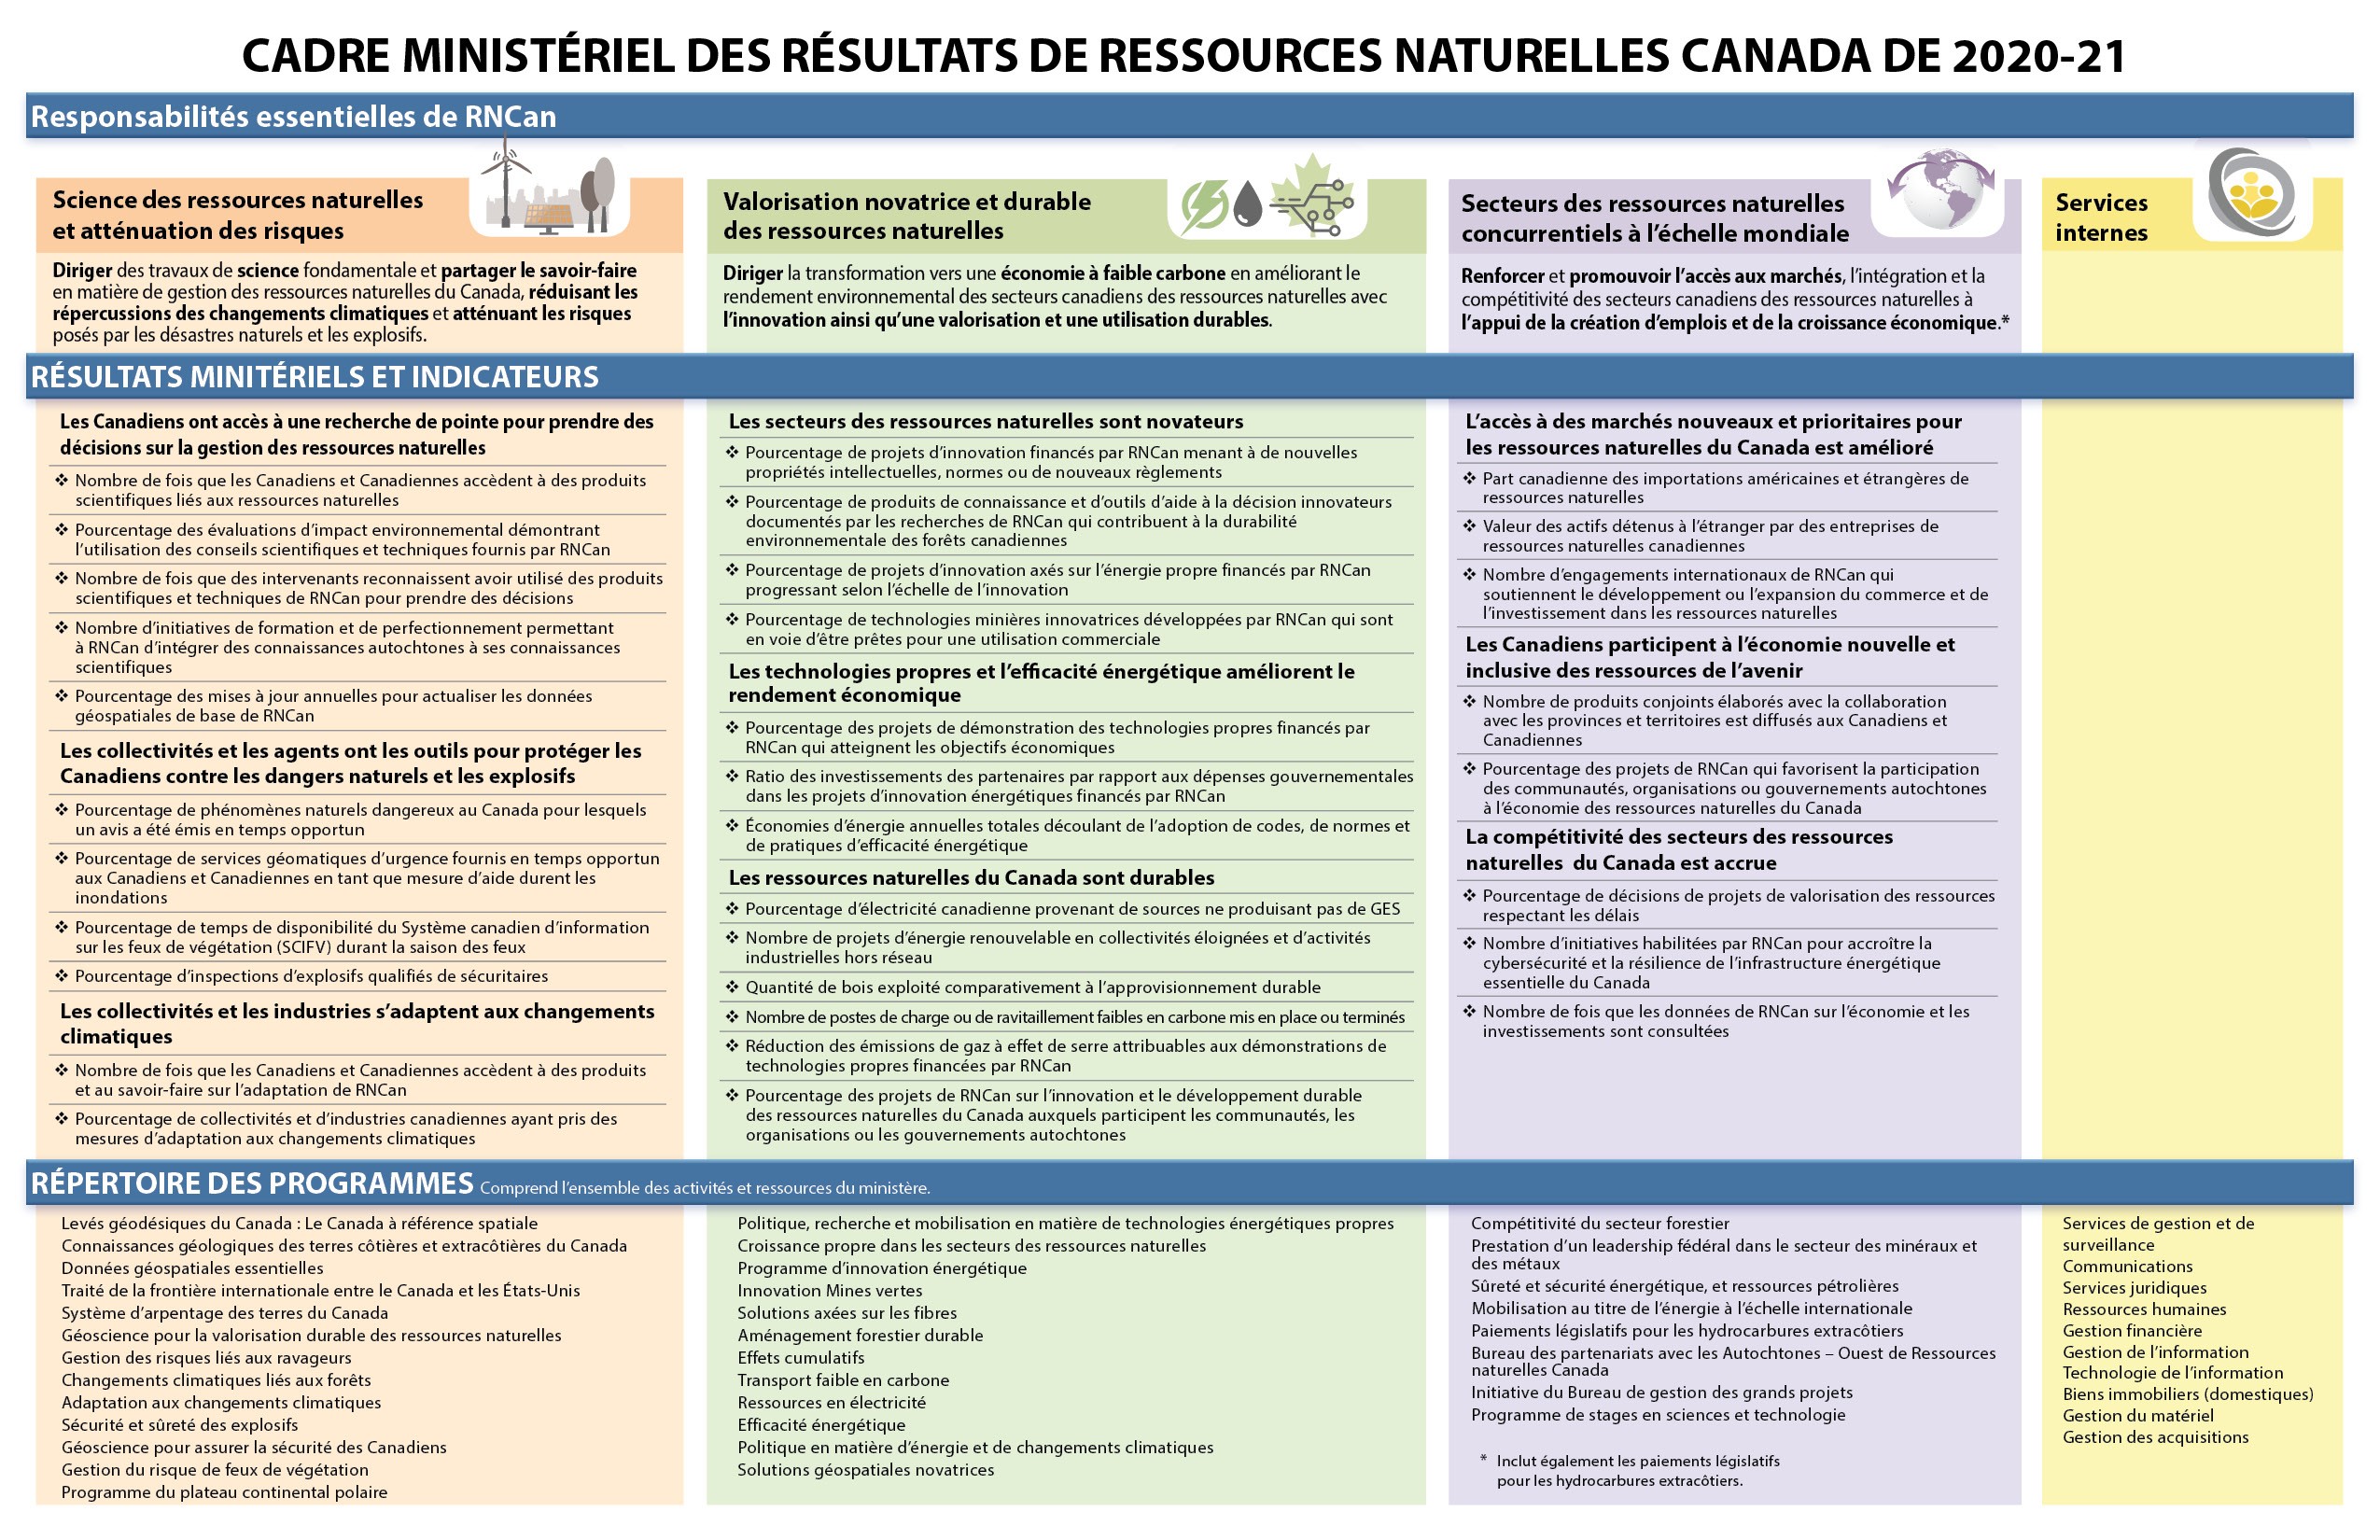 Infographie montrant le cadre de résultats ministériels de Ressources Naturelles Canada pour 2020-2021.